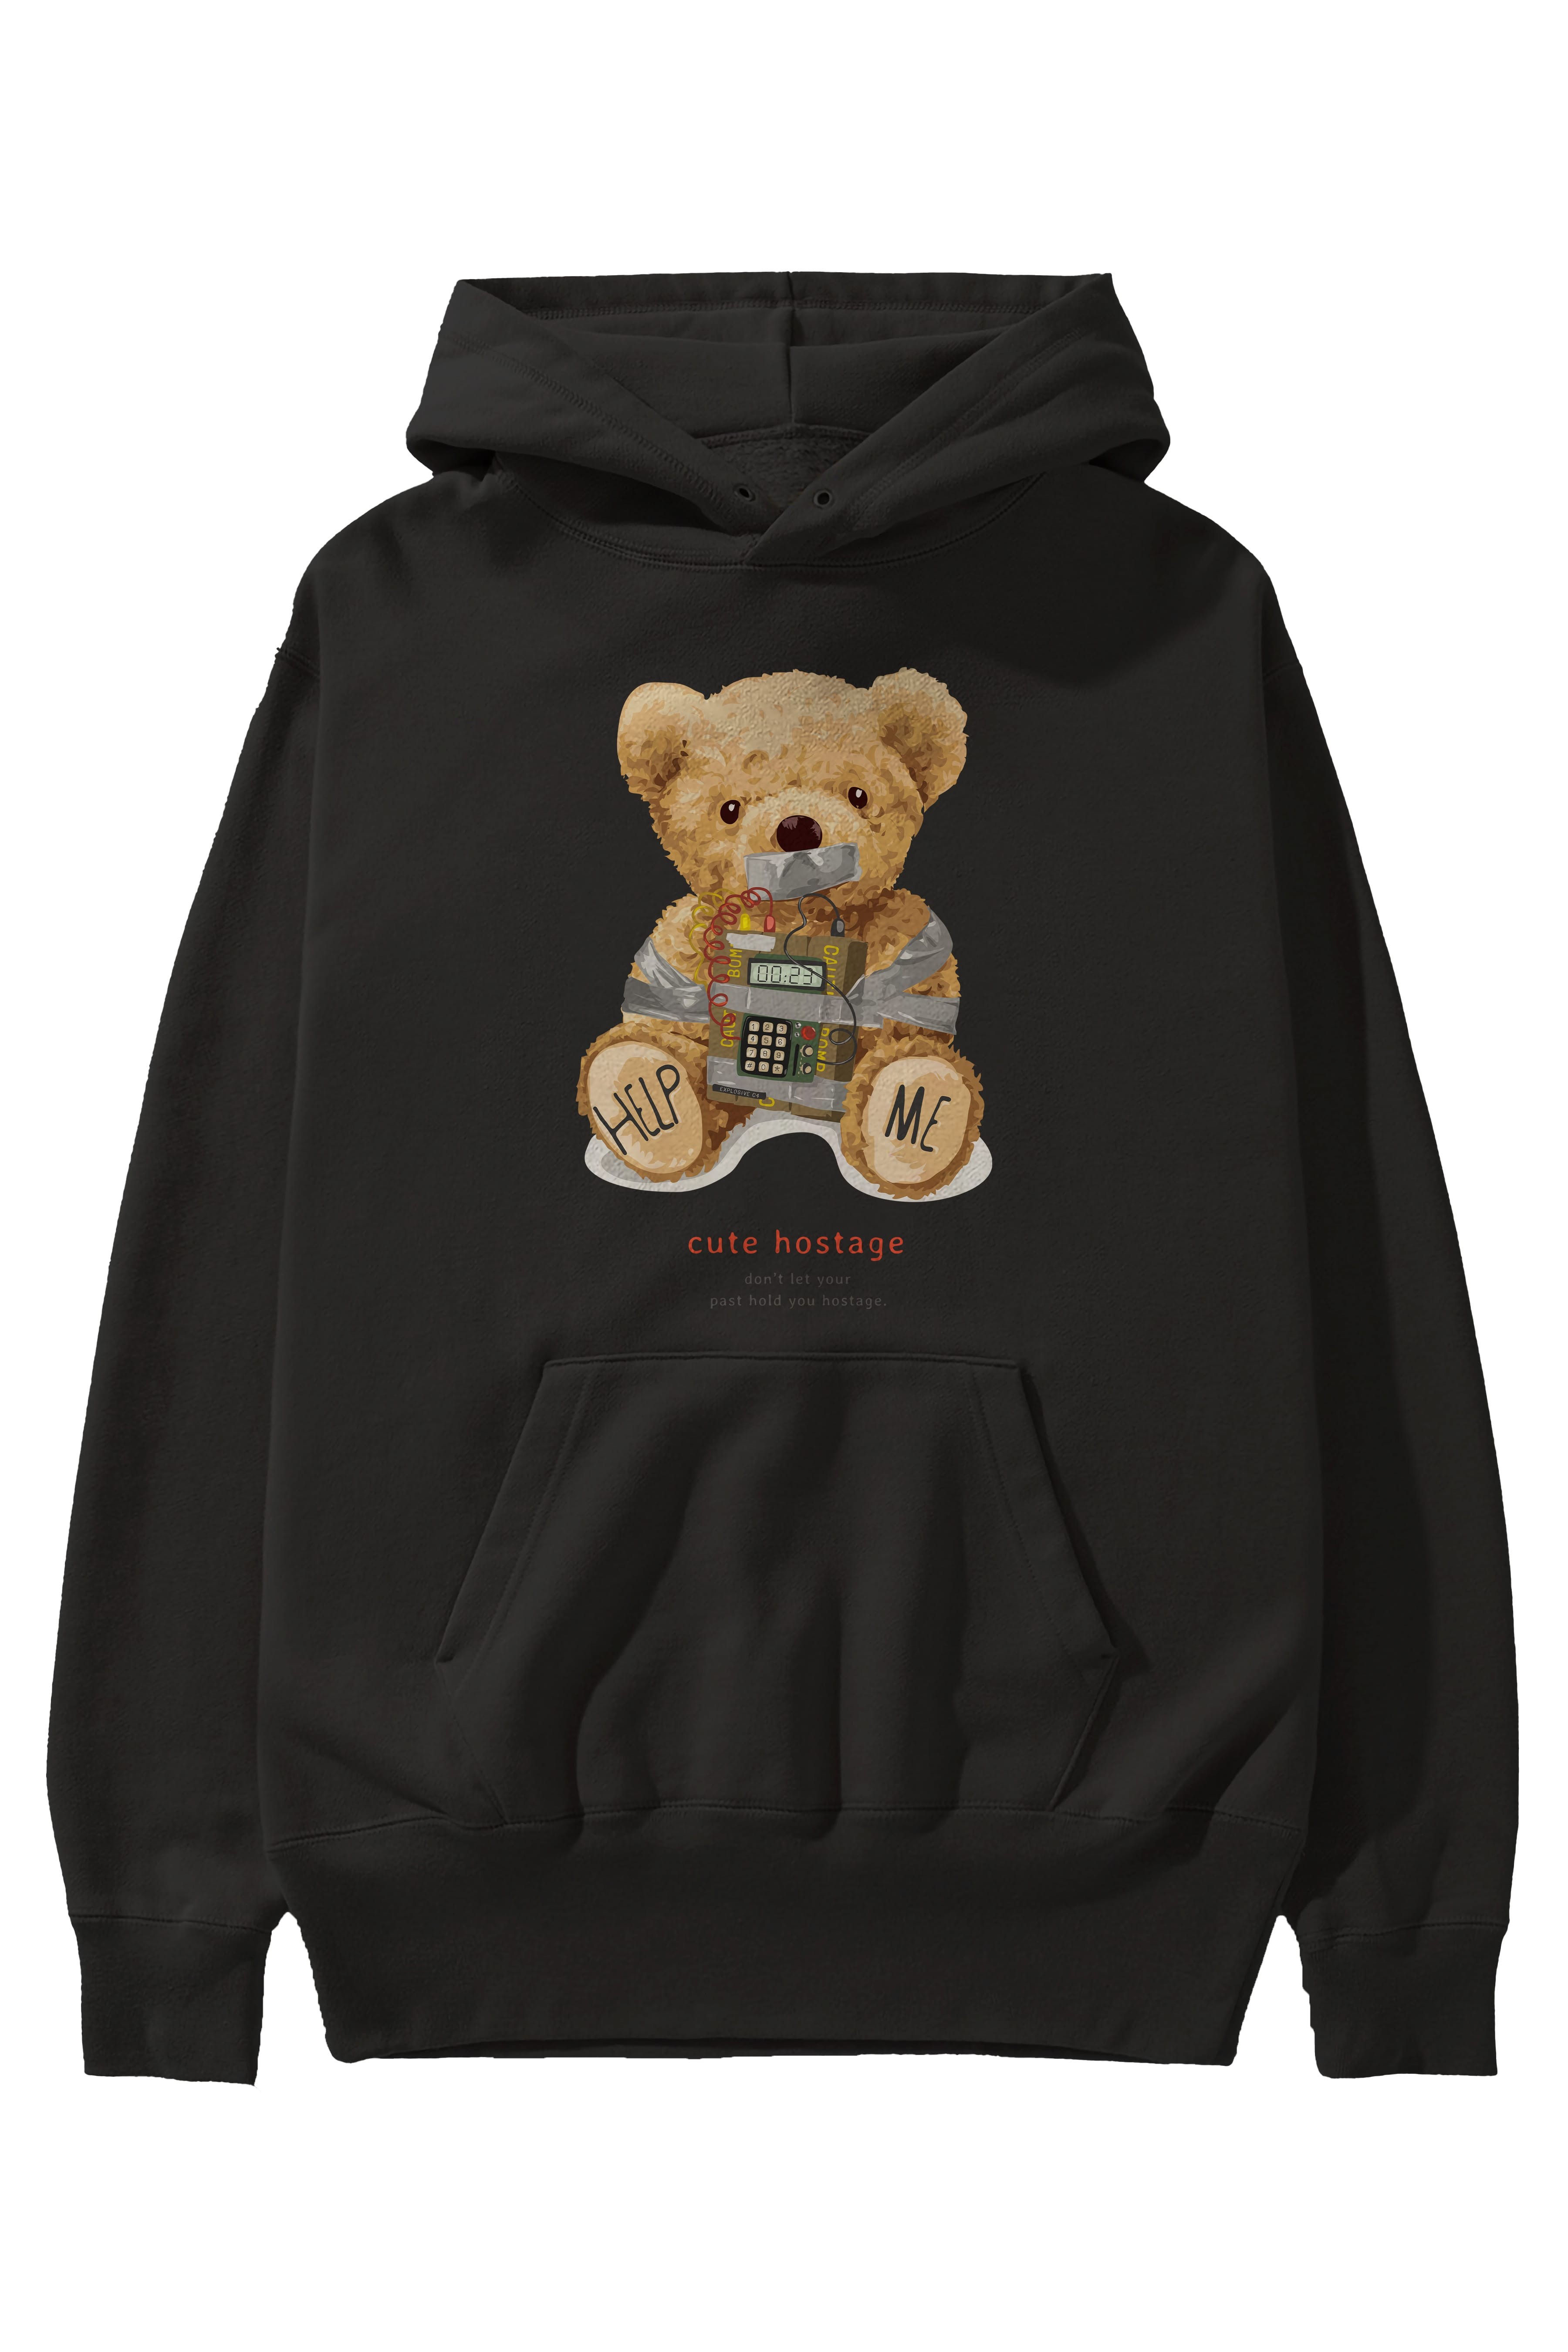 Teddy Bear Help Me Ön Baskılı Hoodie Oversize Kapüşonlu Sweatshirt Erkek Kadın Unisex